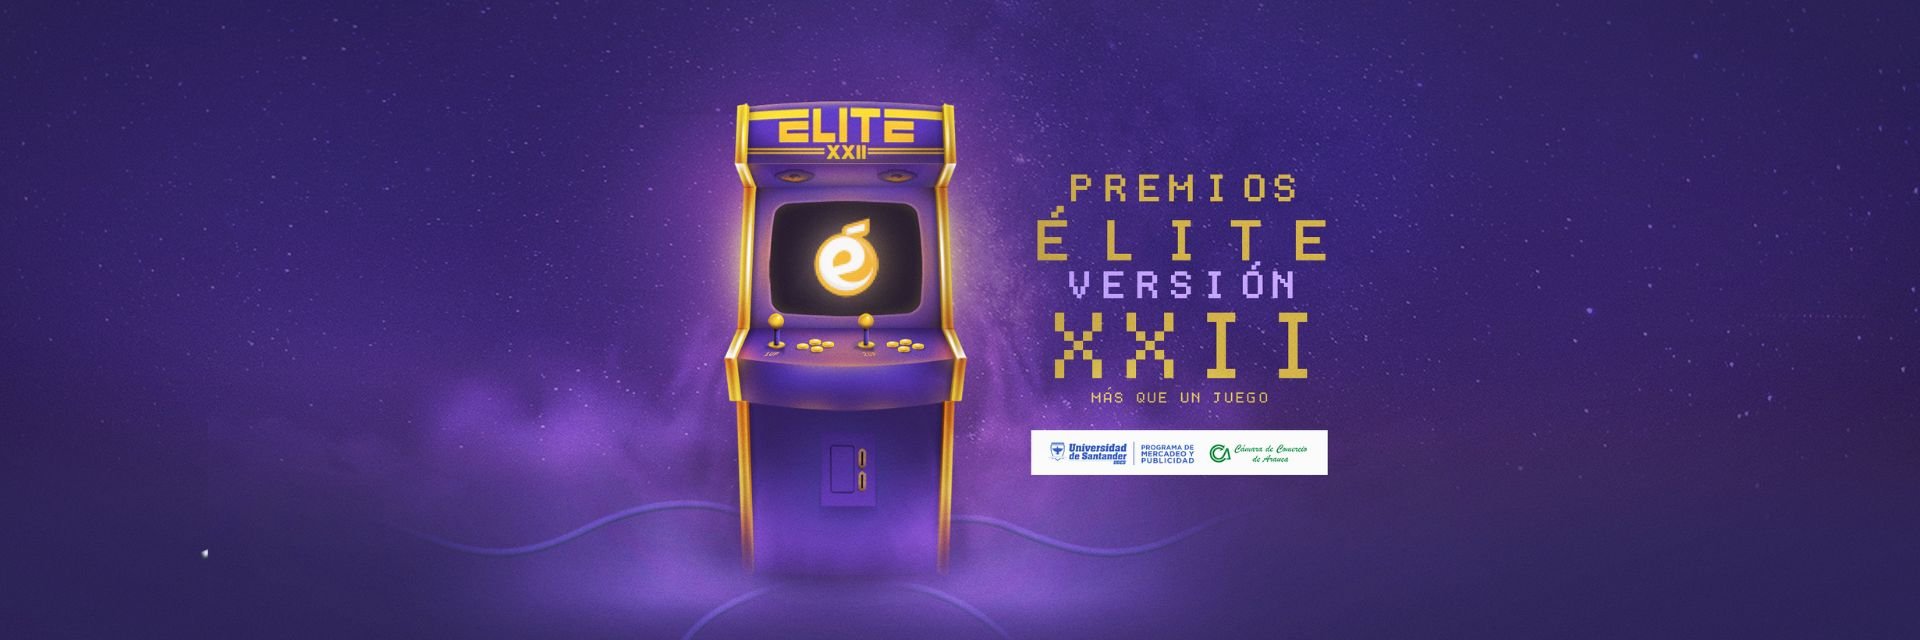 Se lanzaron los Premios Élite versión XXII, este año son “más que un juego”